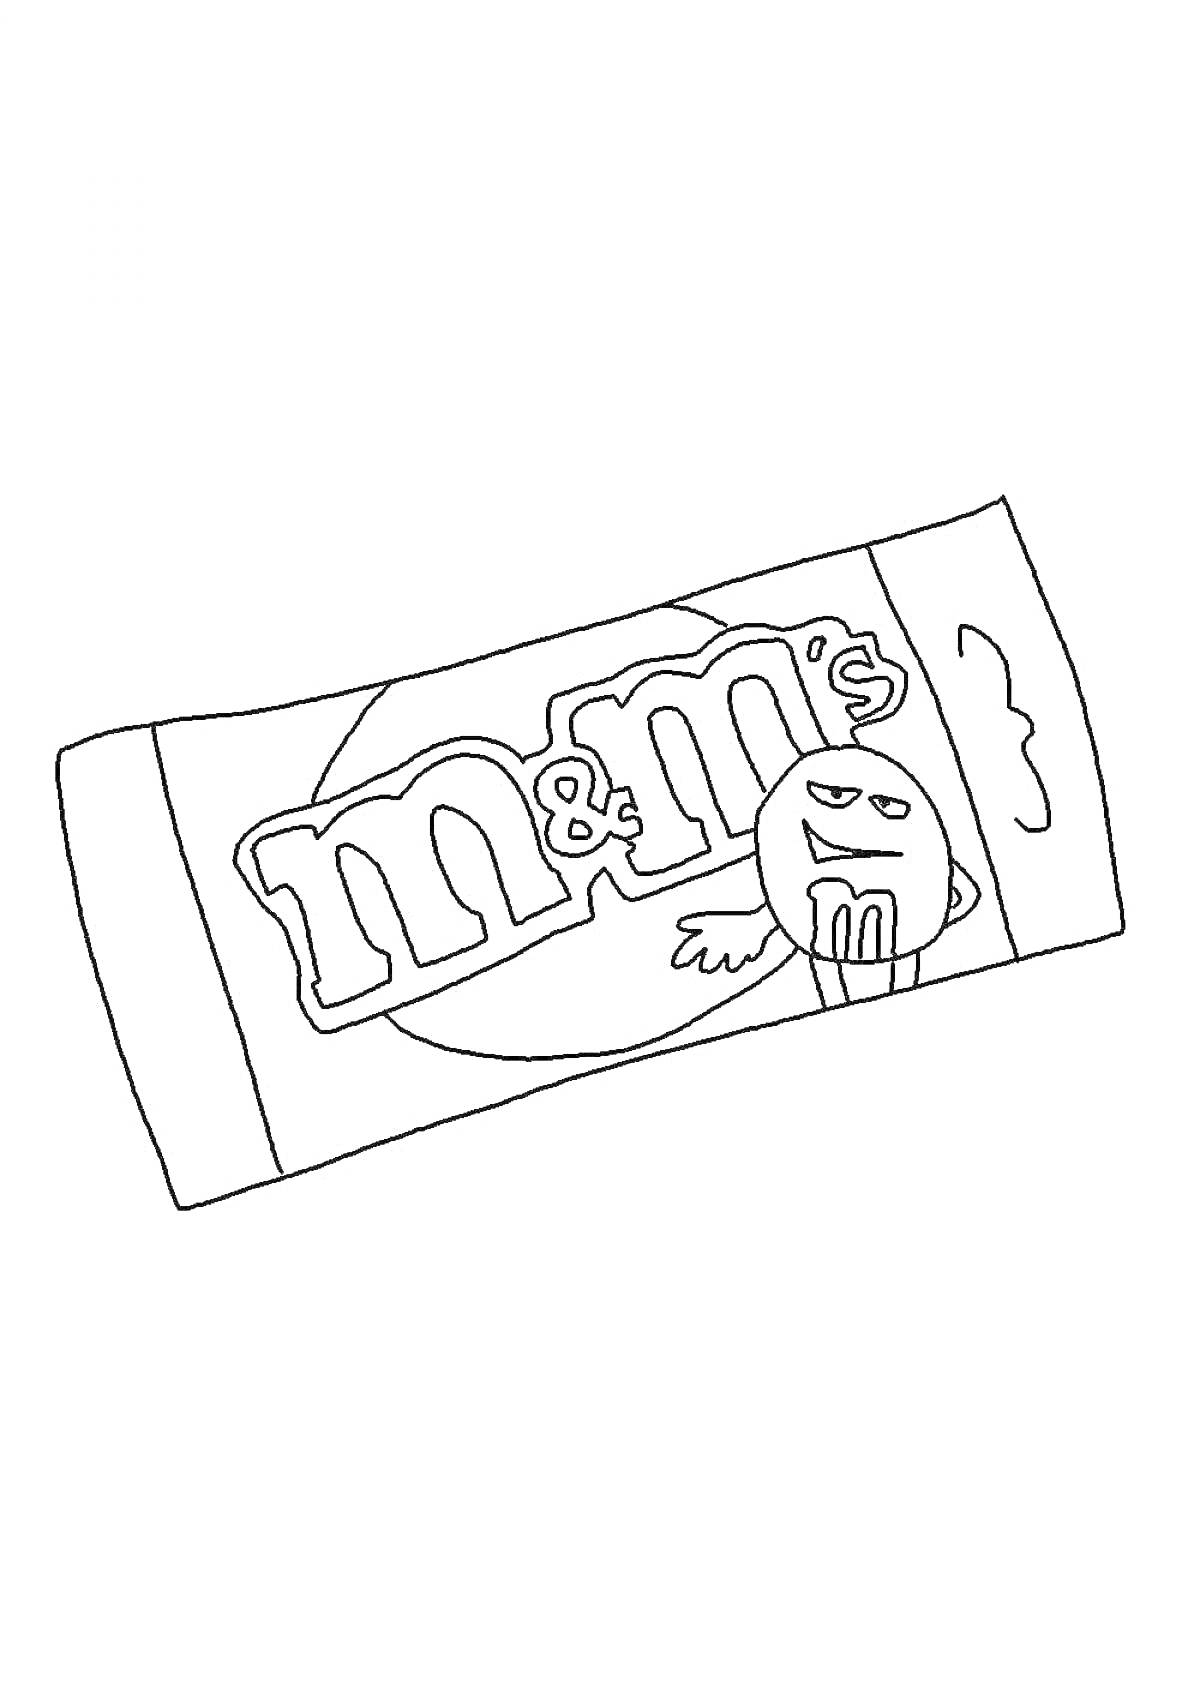 Раскраска Пакетик M&M's с изображением смешного персонажа